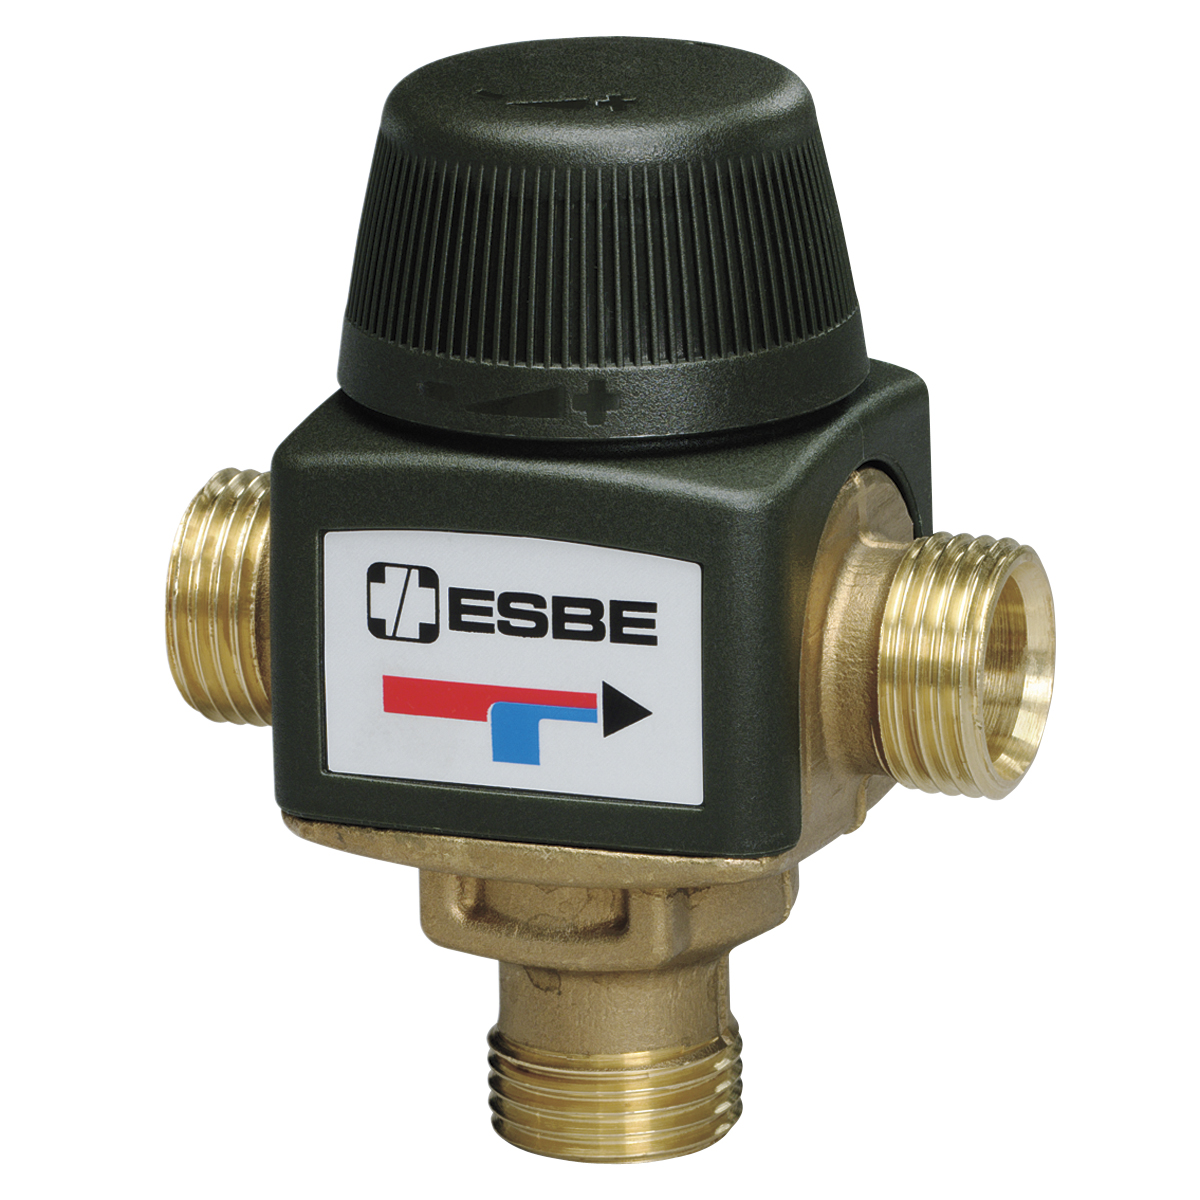 Трехходовой терморегулятор для отопления. Клапан термостатический ESBE vta321. Термостатический смесительный клапан ESBE. ESBE клапан трехходовой смесительный 1 1/2. Вентиль термосмесительный для ГВС ESBE vta322.